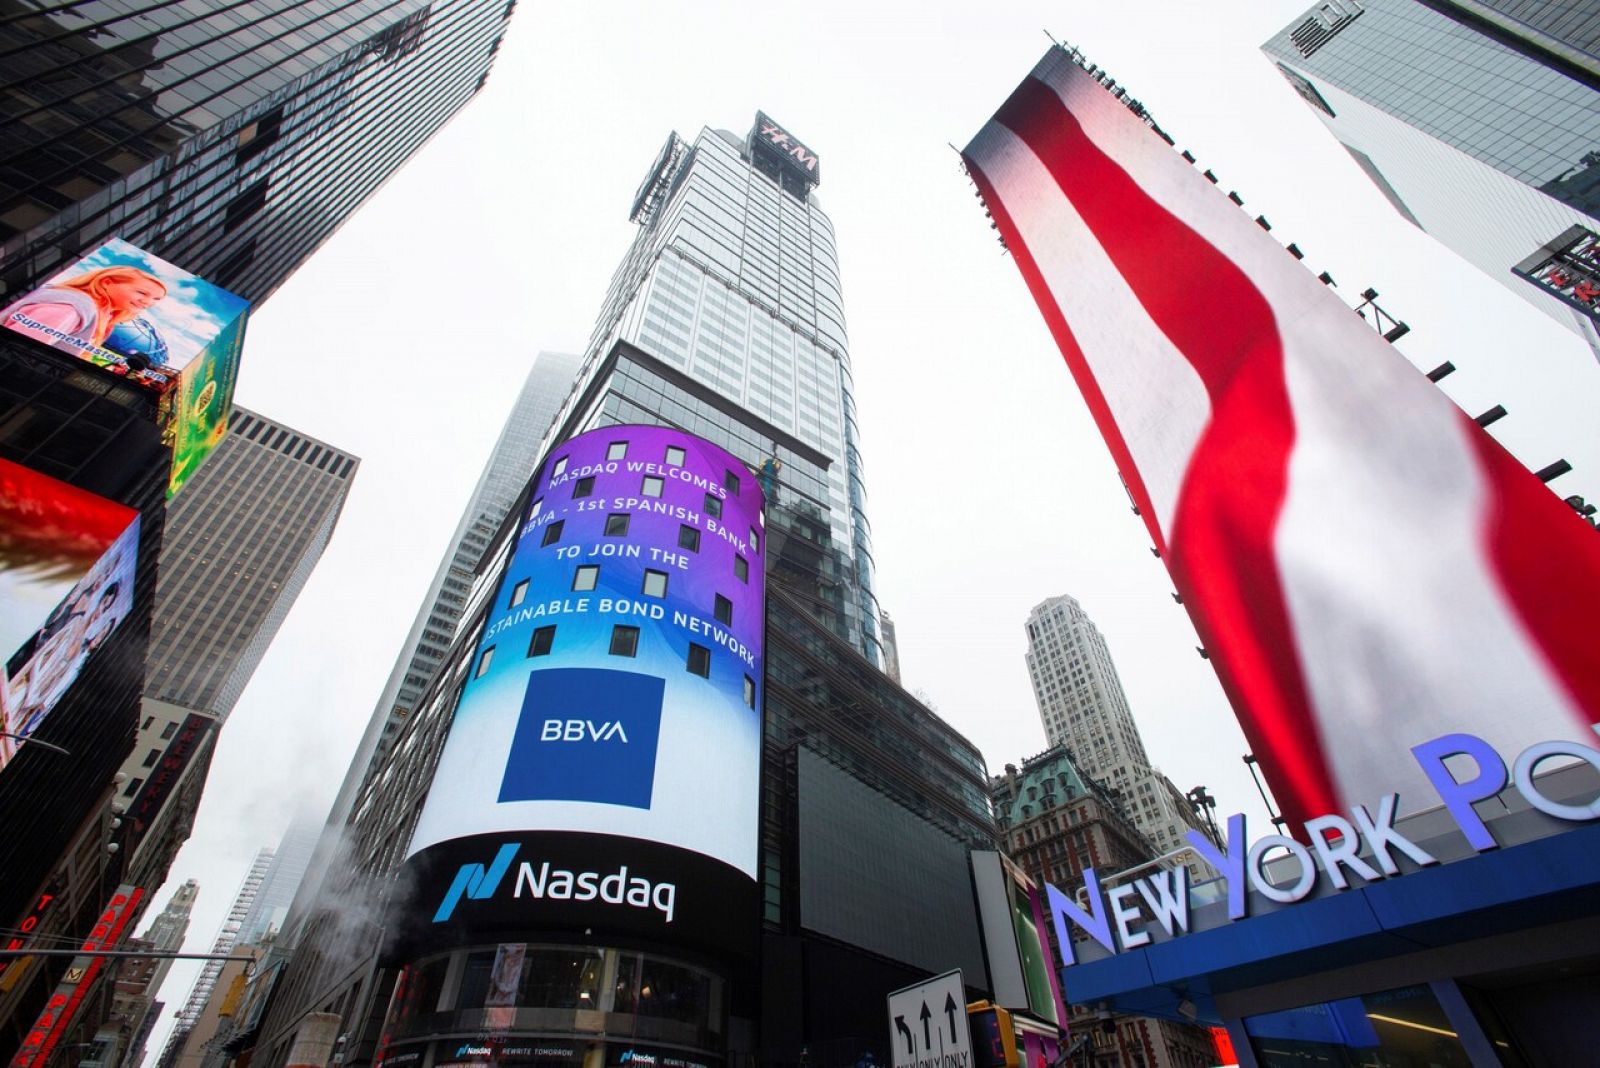 Publicidad del banco BBVA en Times Square, Nueva York